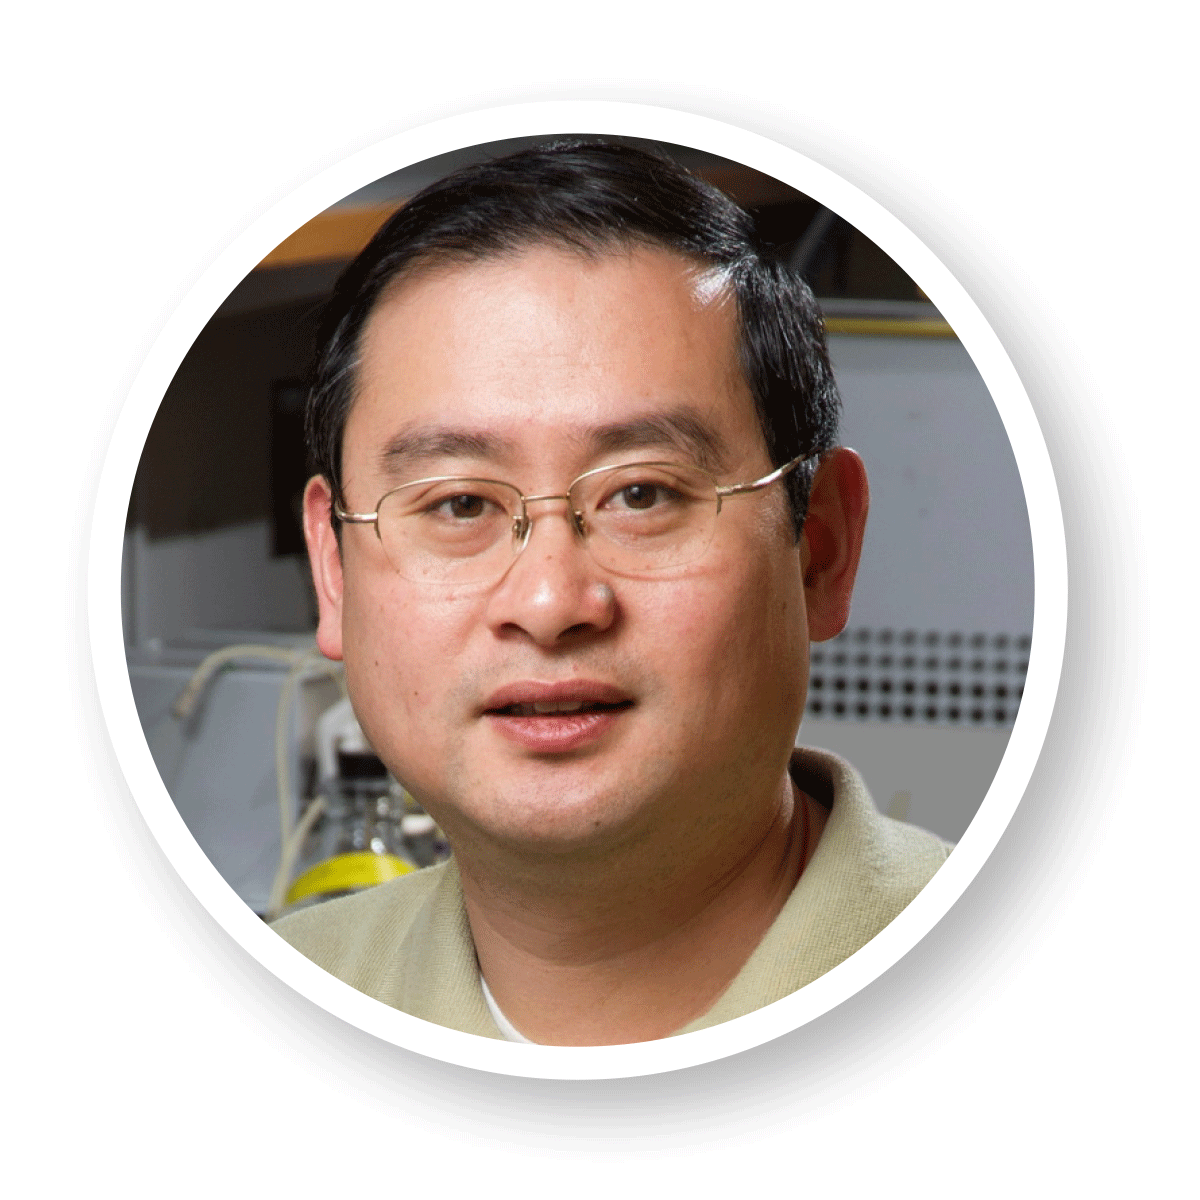 Dr. Zhaohui Aleck Wang